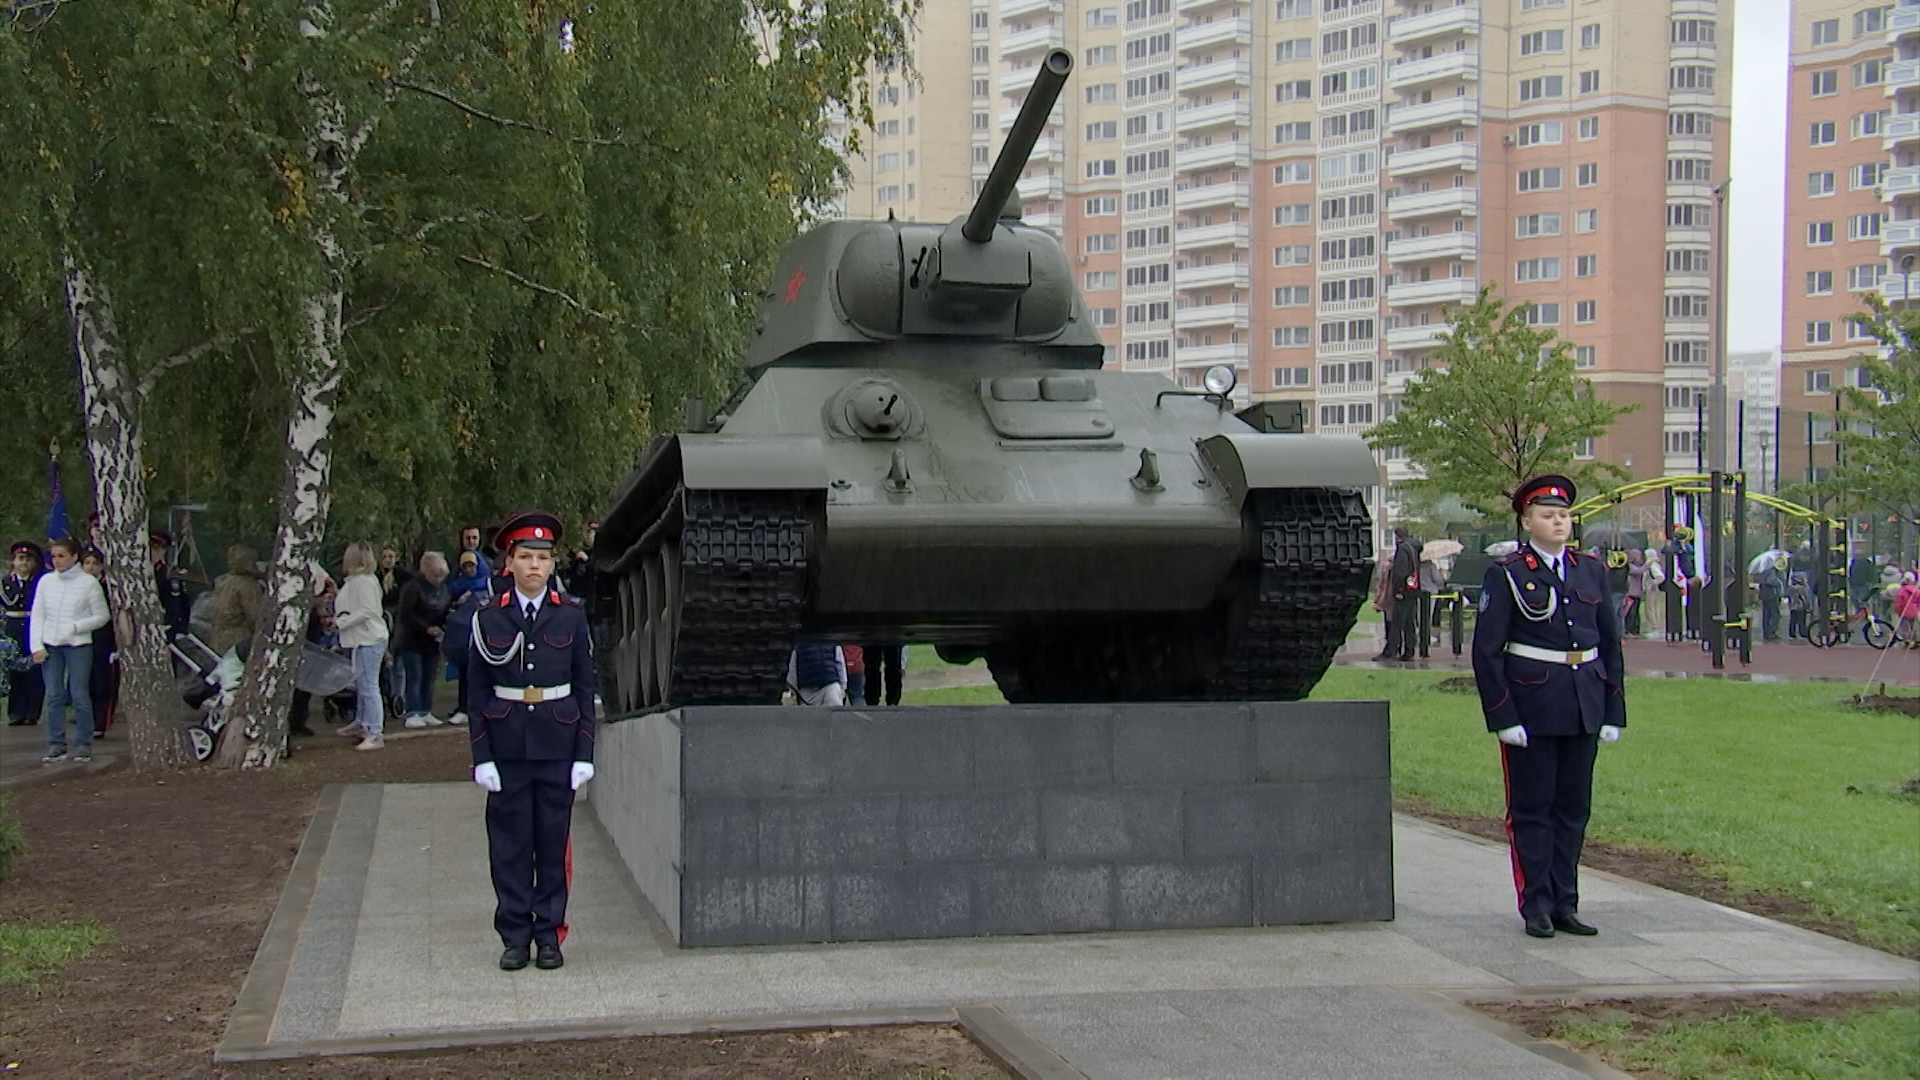 Танк Т-34-76